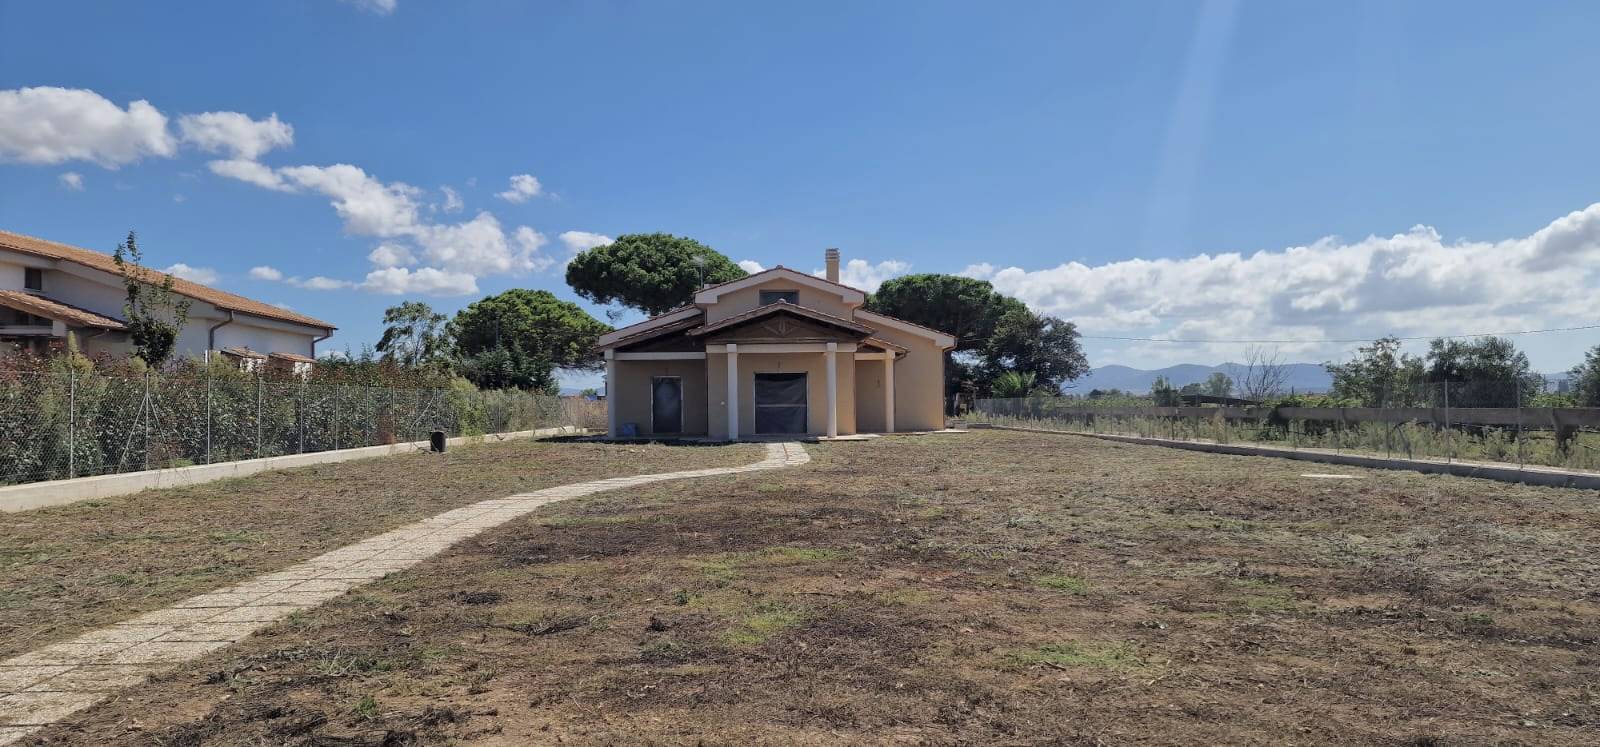 Villa in vendita a Tarquinia, 6 locali, prezzo € 300.000 | PortaleAgenzieImmobiliari.it